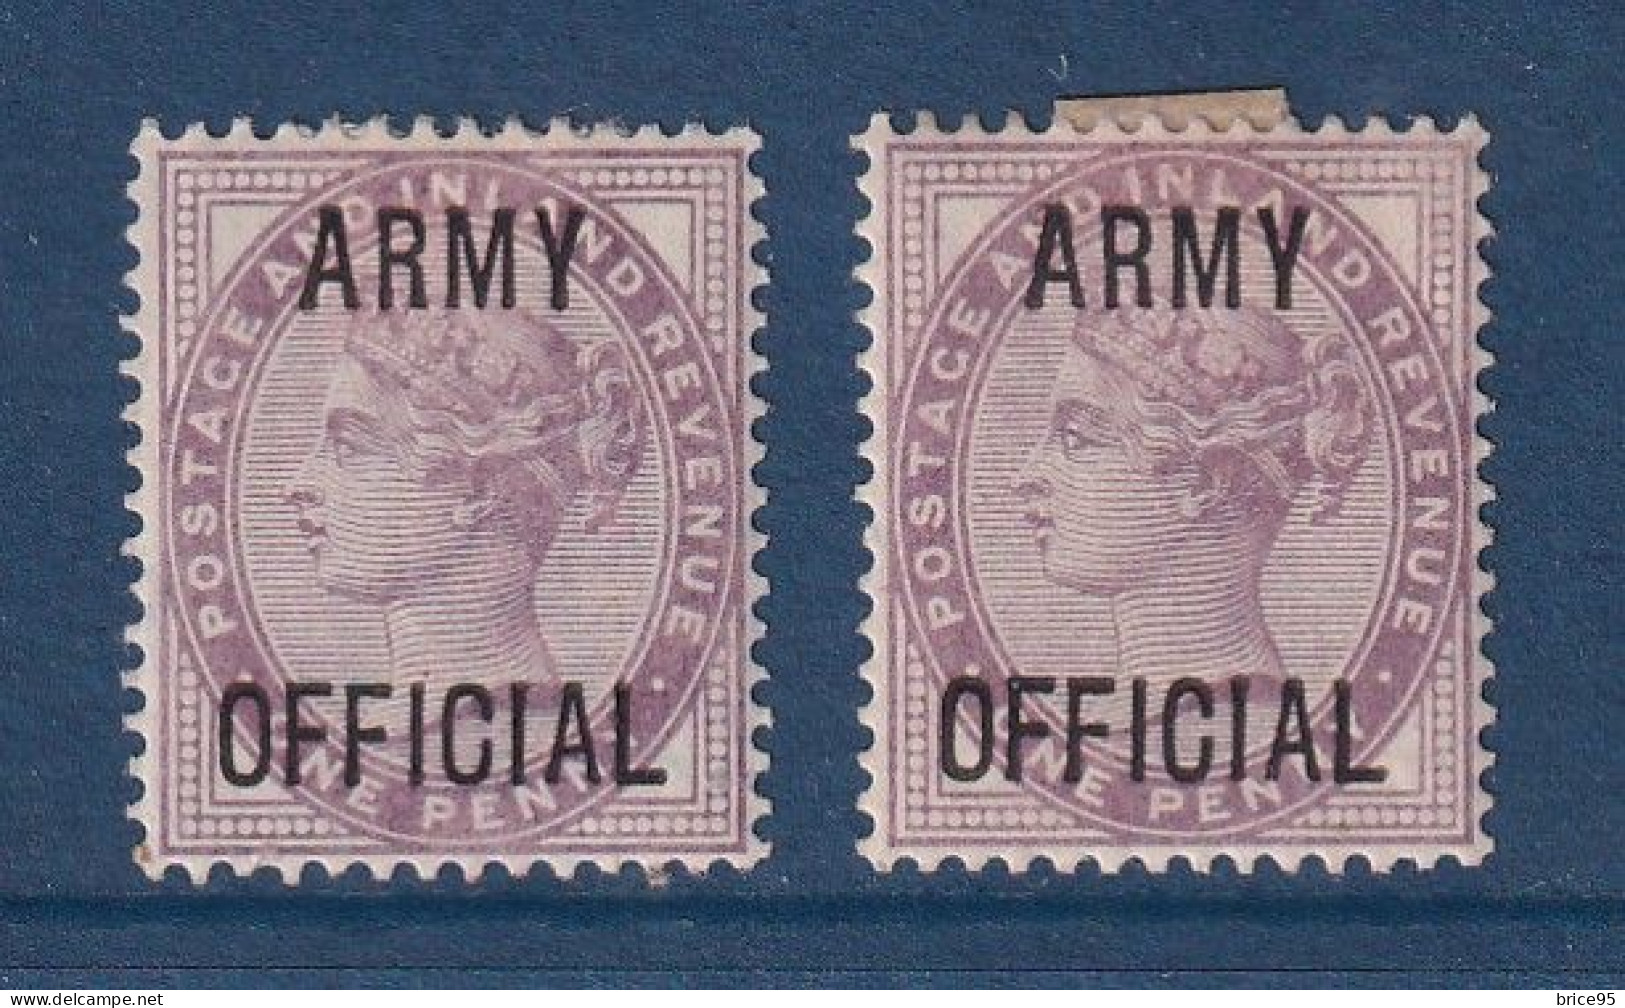 Grande Bretagne - Service - YT N° 43 * - Neuf Avec Charnière - 1896 à 1901 - Dienstzegels